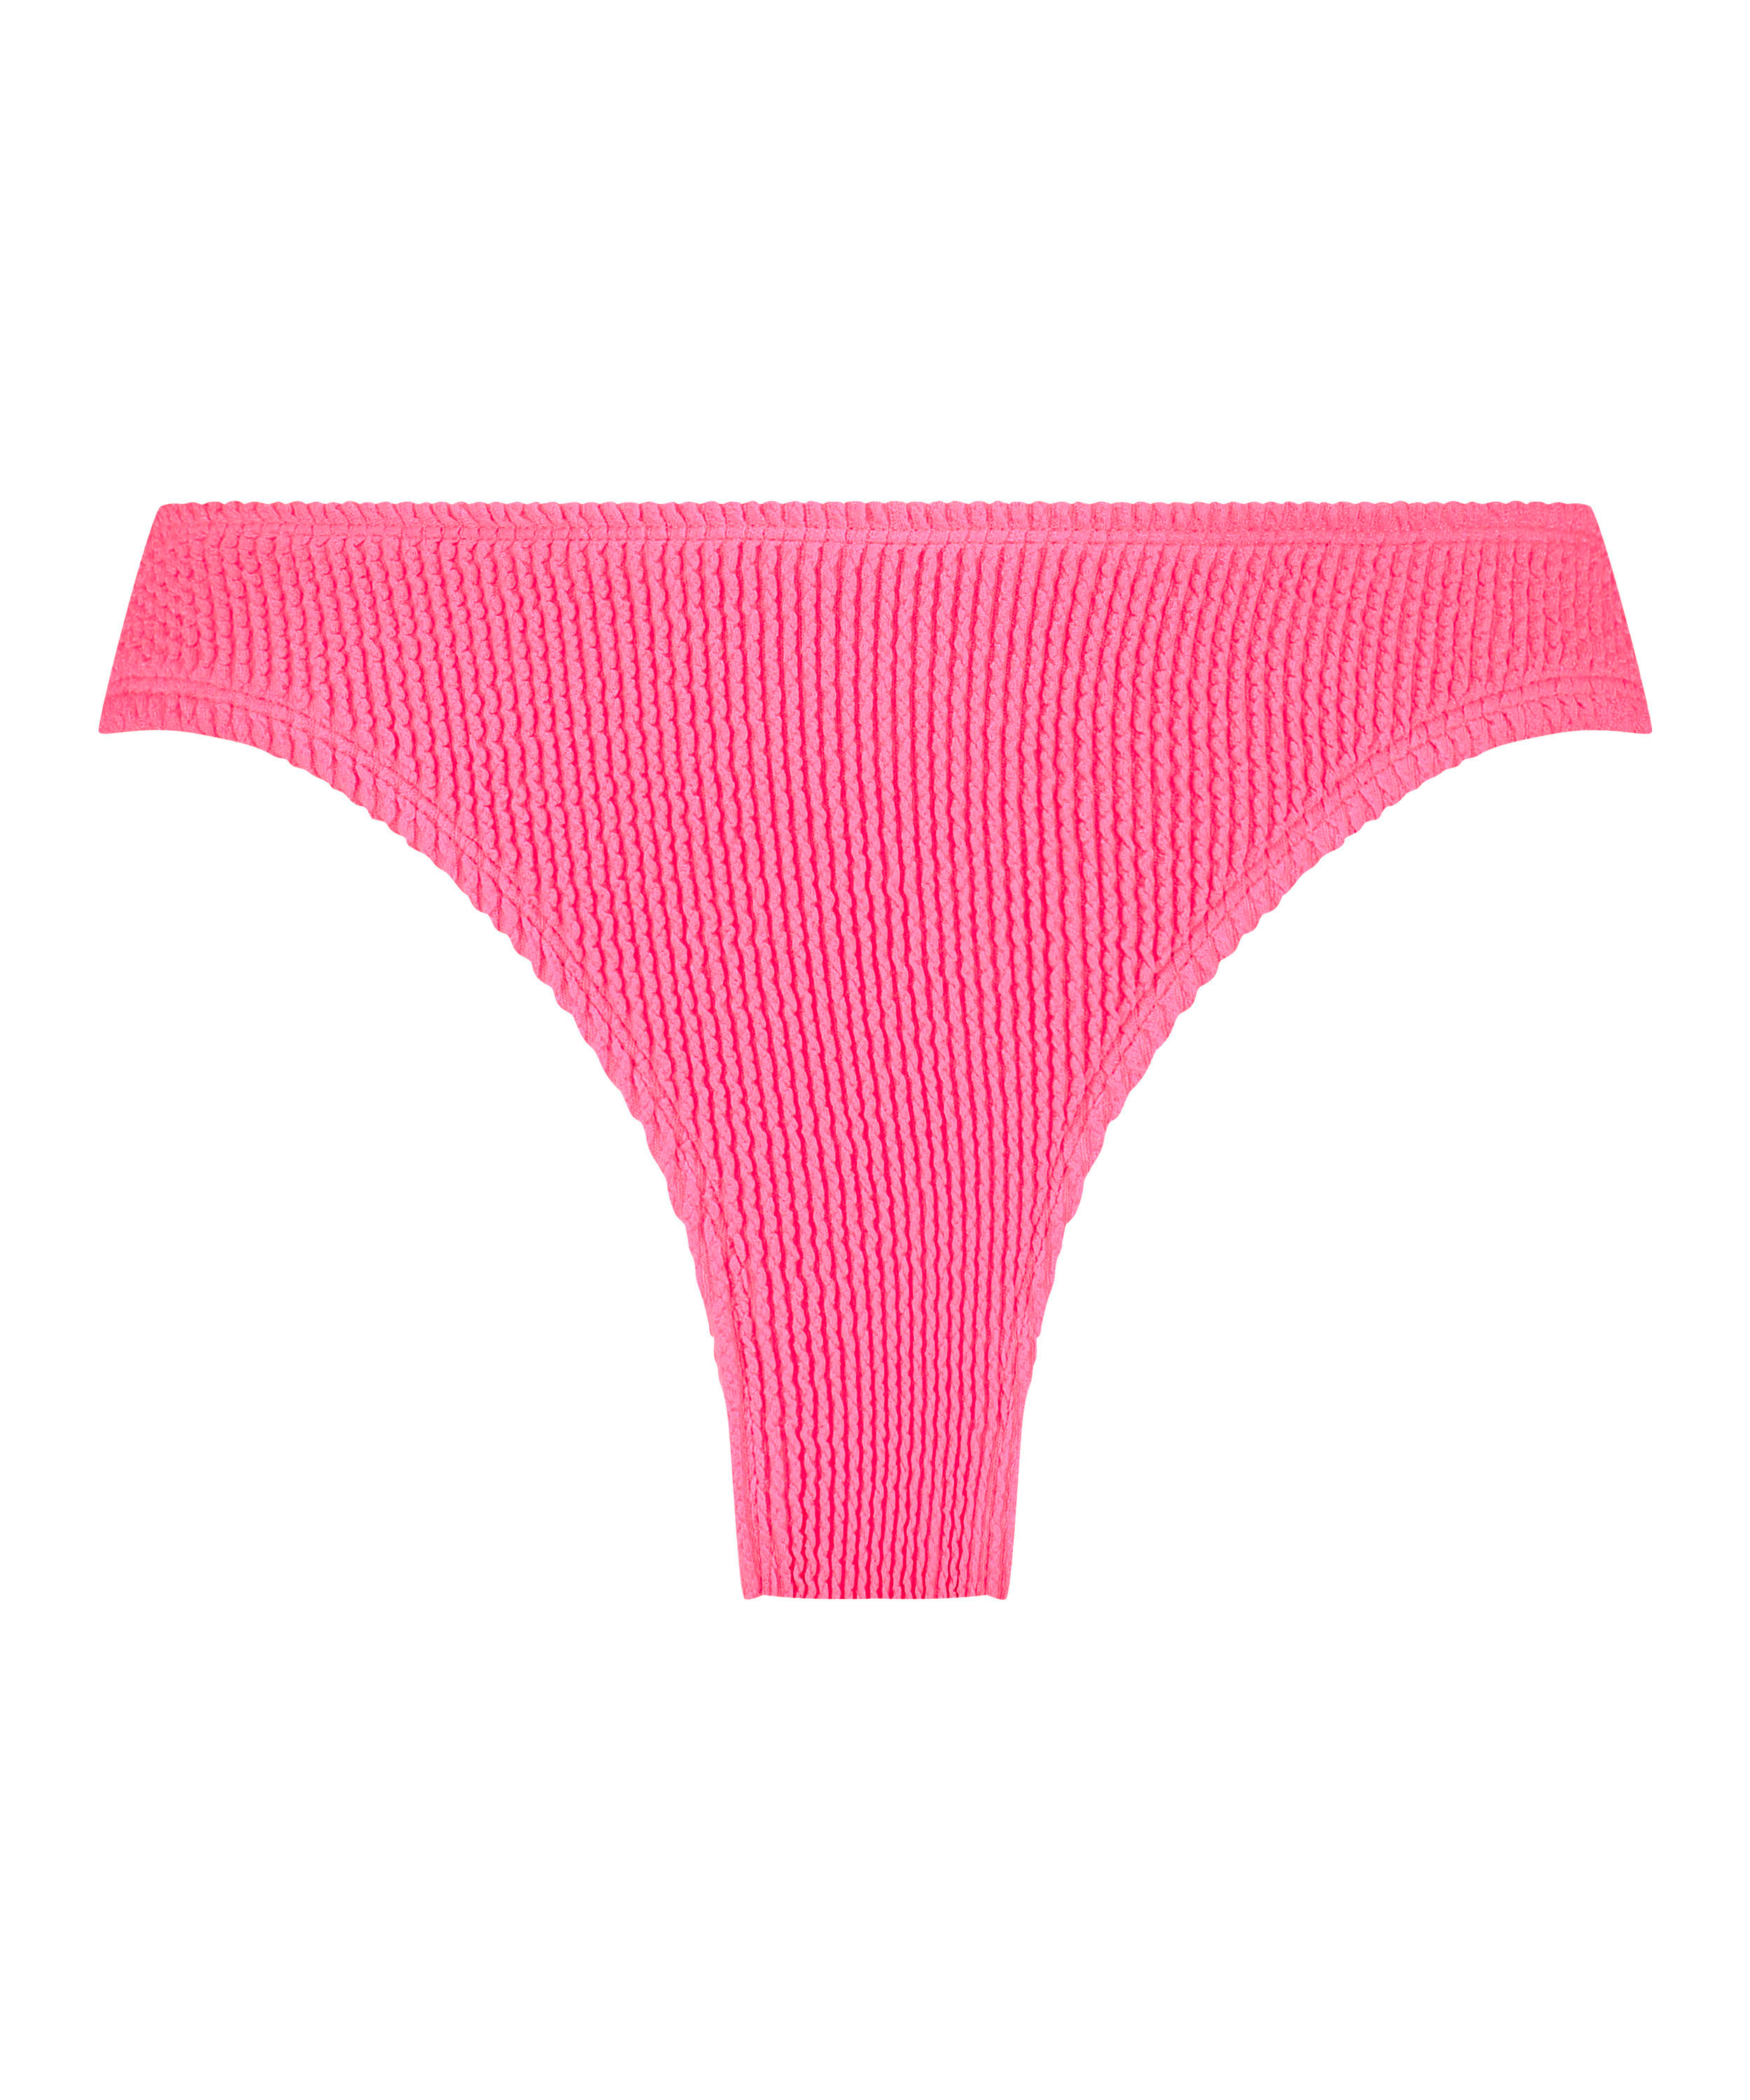 Crinkle High-Leg Bikini Bottoms, Pink, main